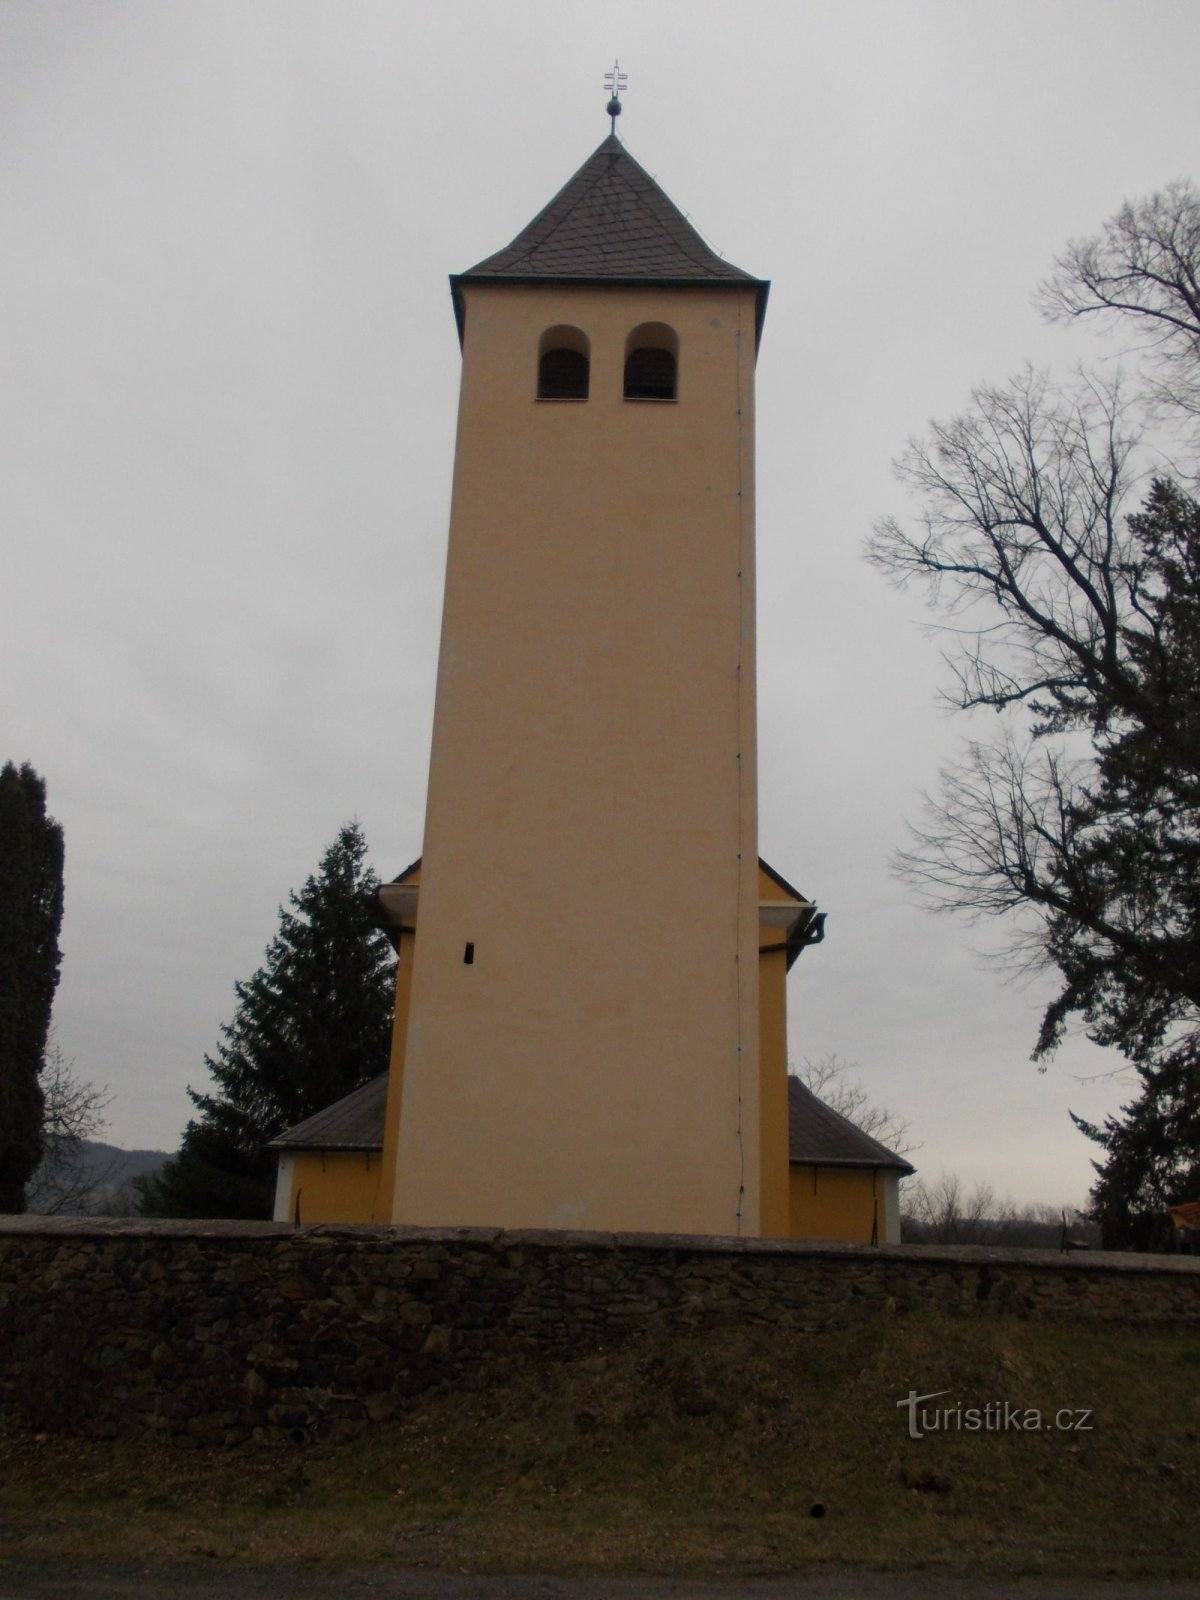 wieża kościelna